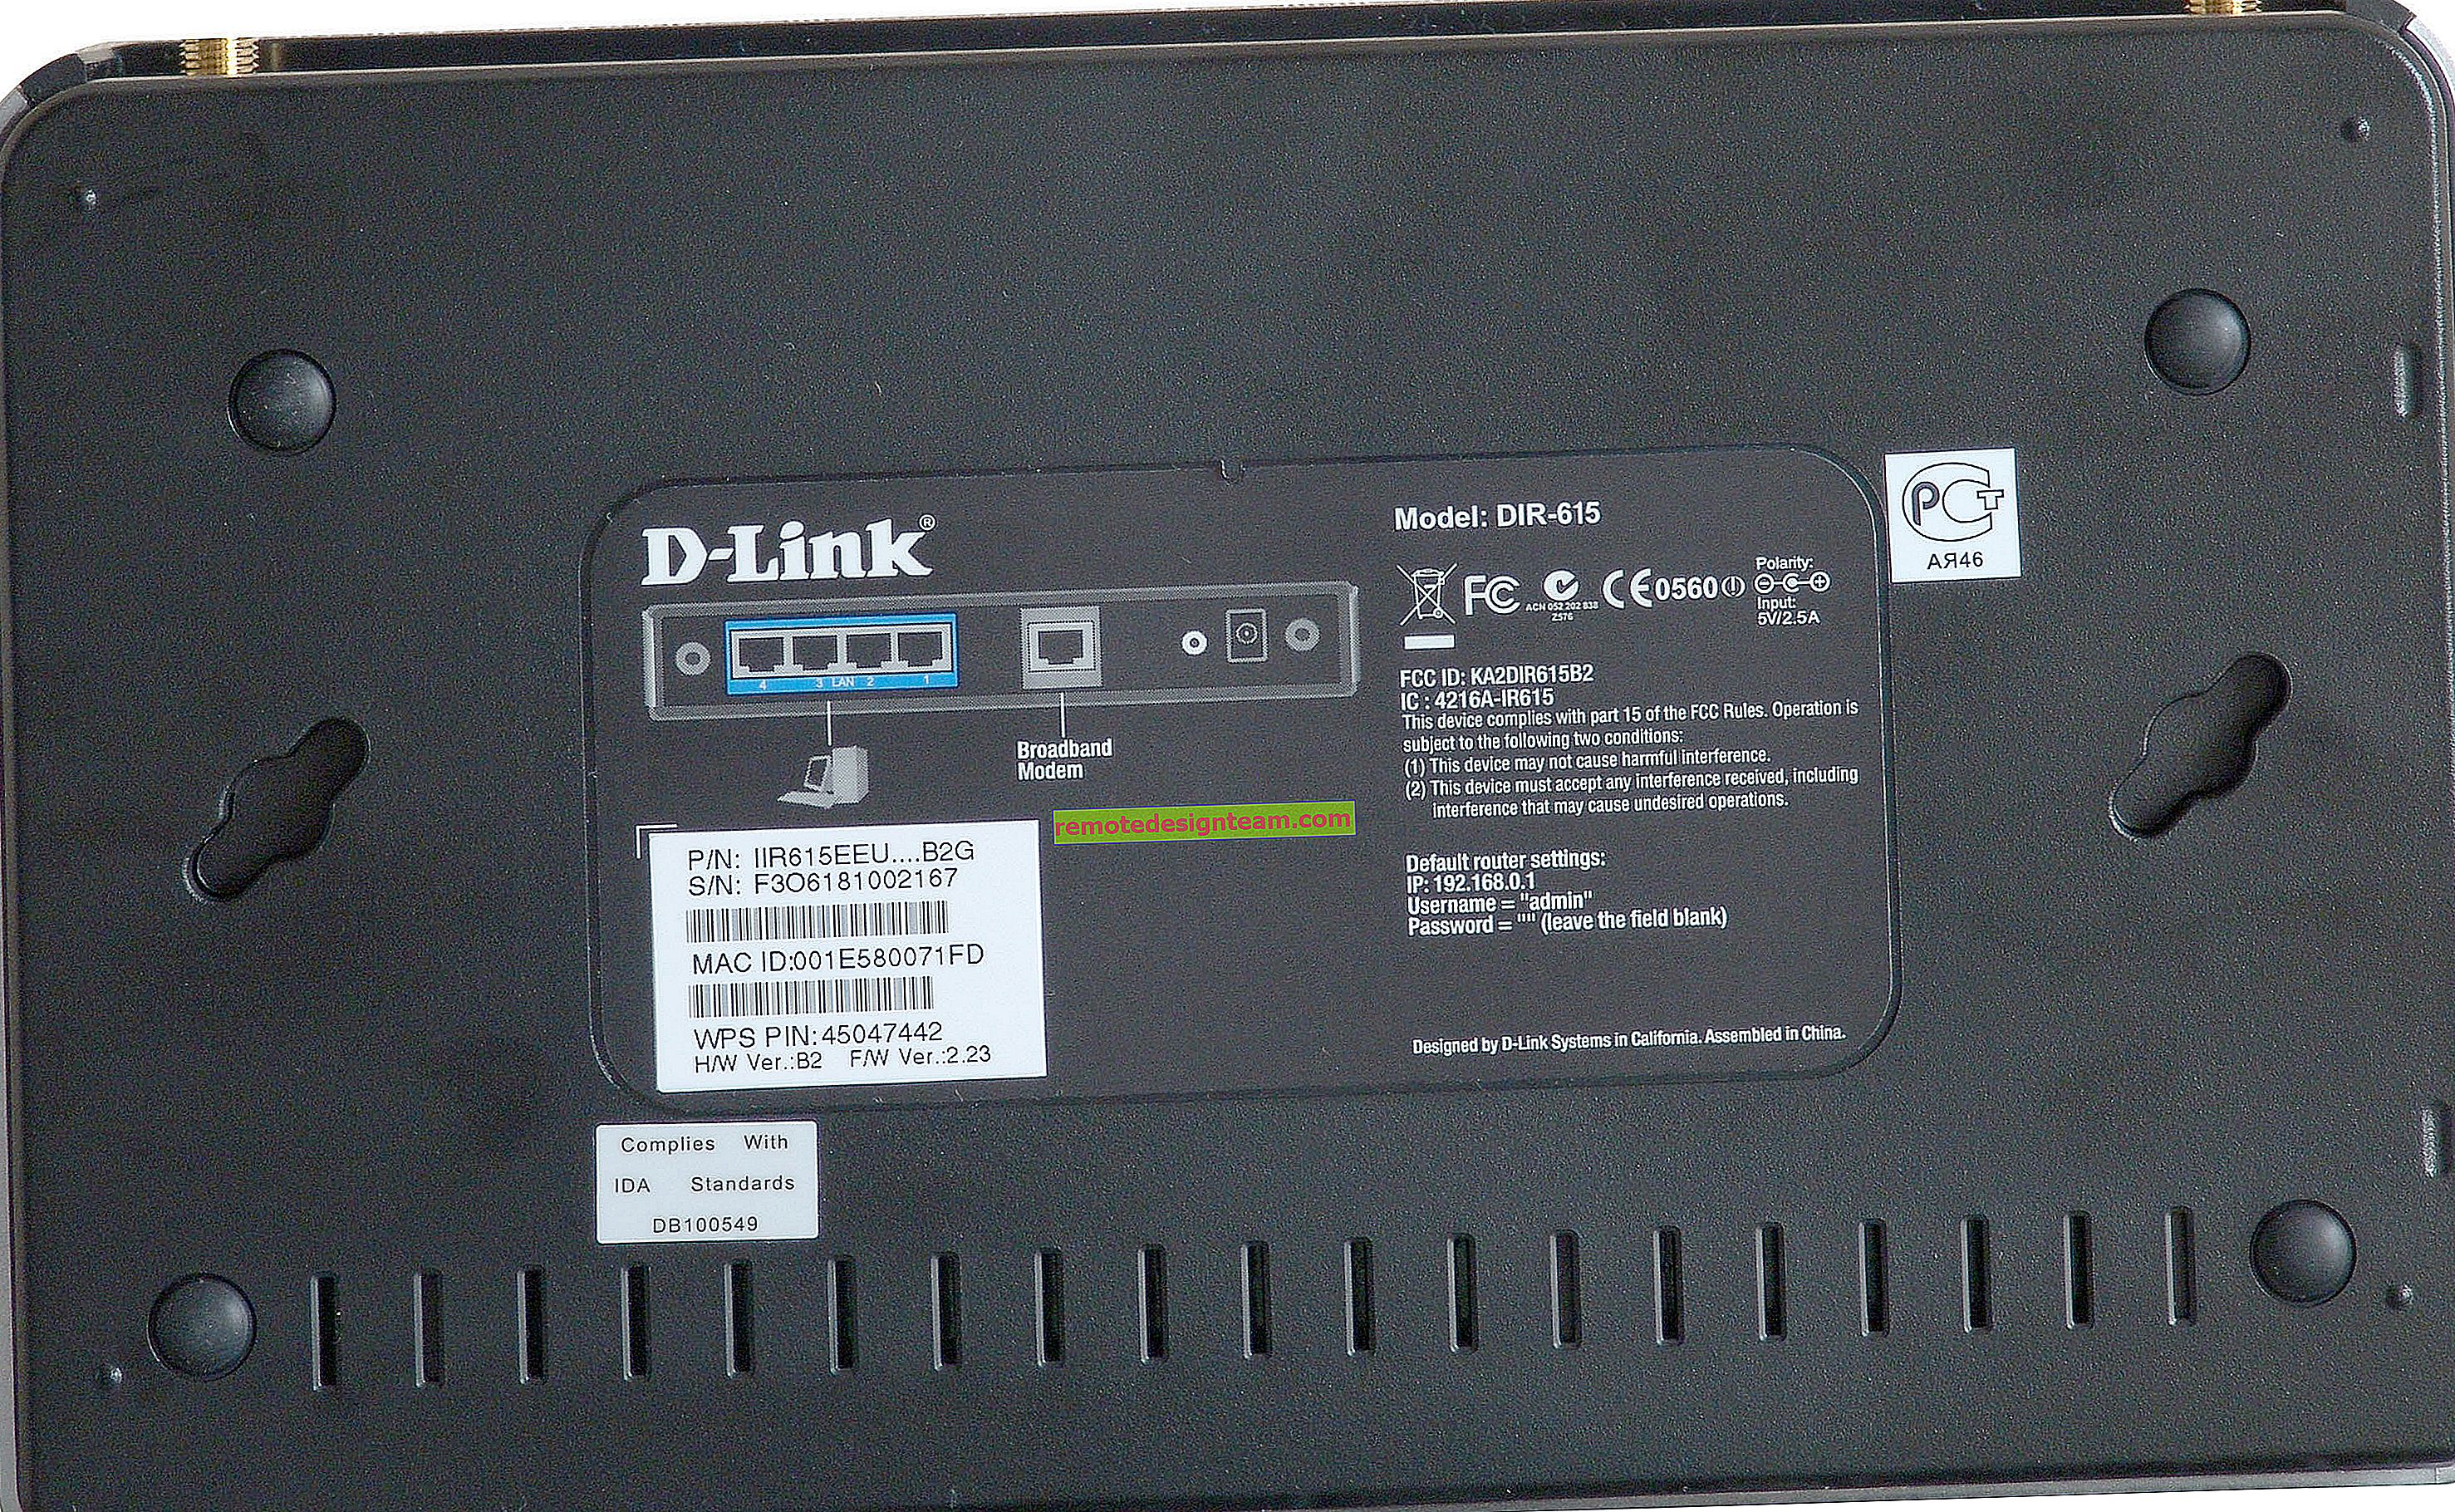 Firmware penghala D-Link DIR-300A. Kemas kini perisian dalam dua cara